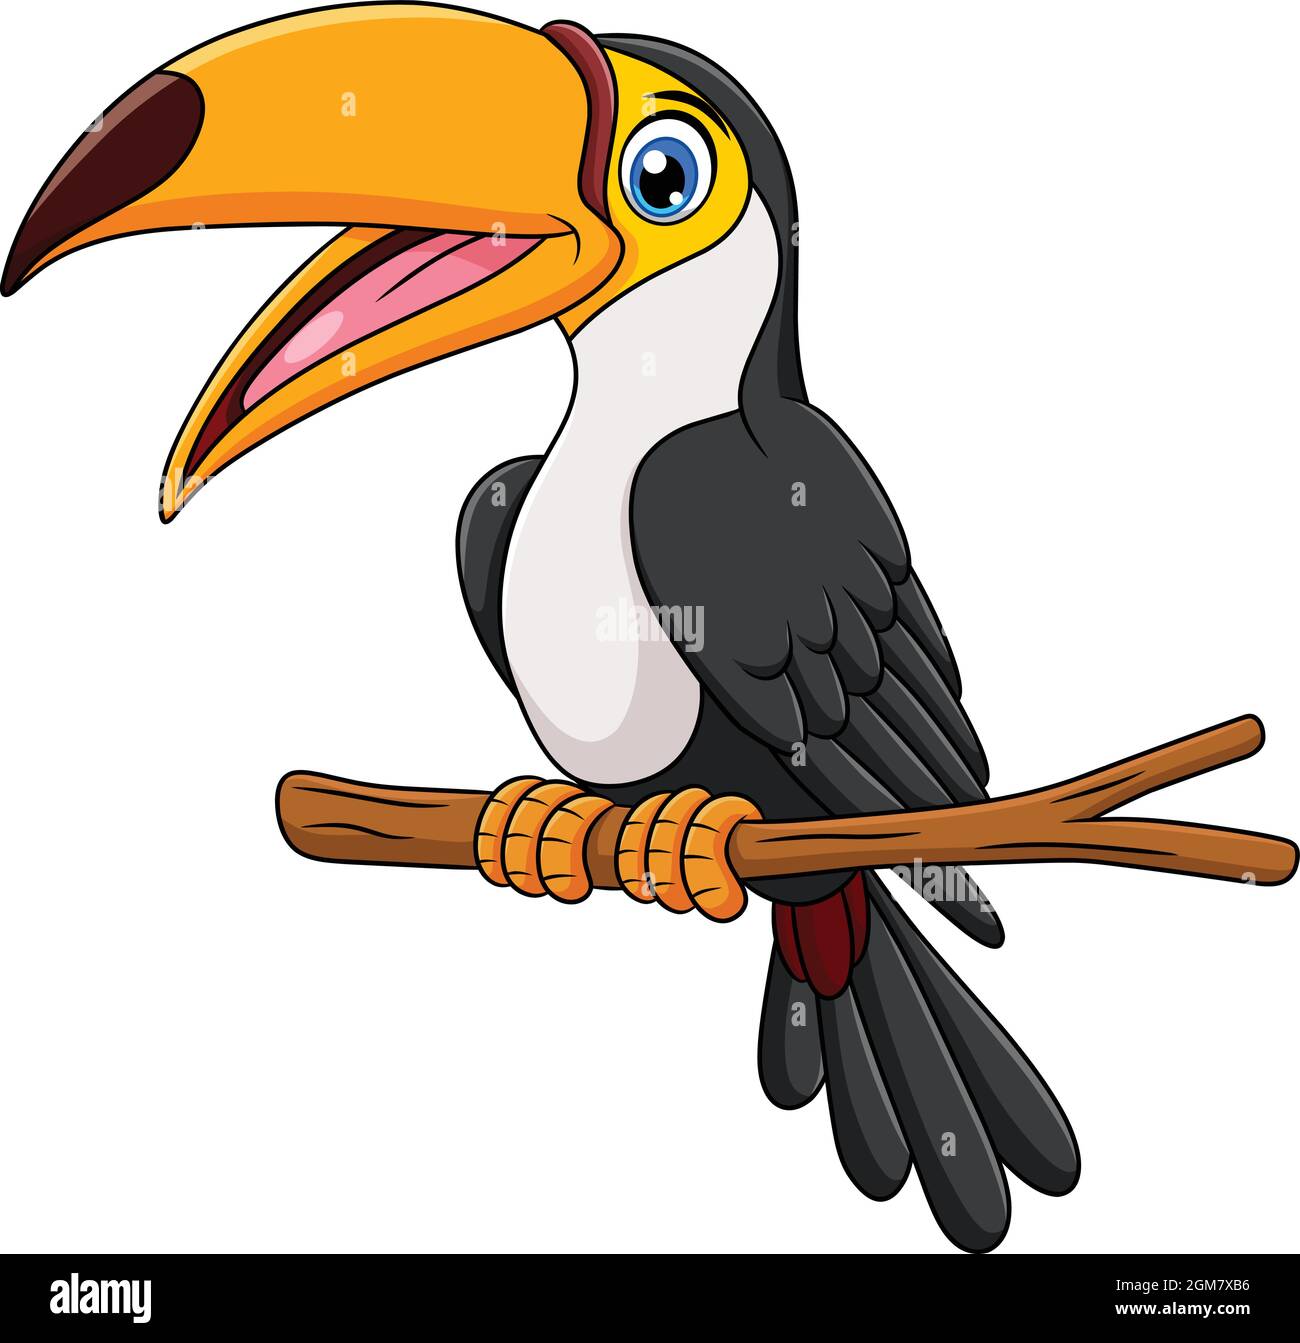 Cute Toucan bird cartoon vector illustration Stock Vector